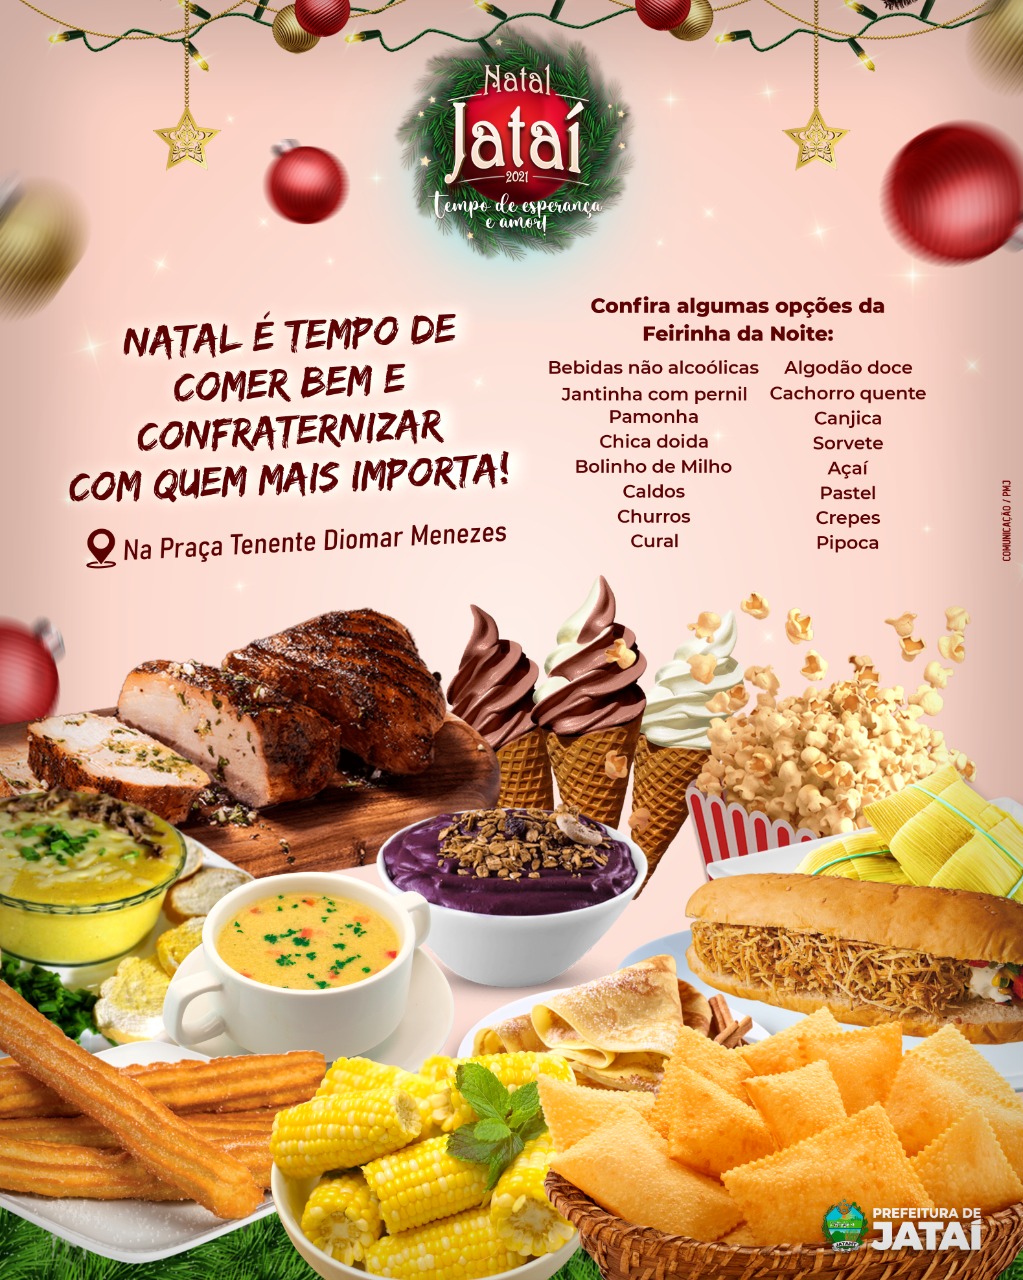 Natal Jatai 2021 dá um show de gastronomia | Prefeitura de Jataí